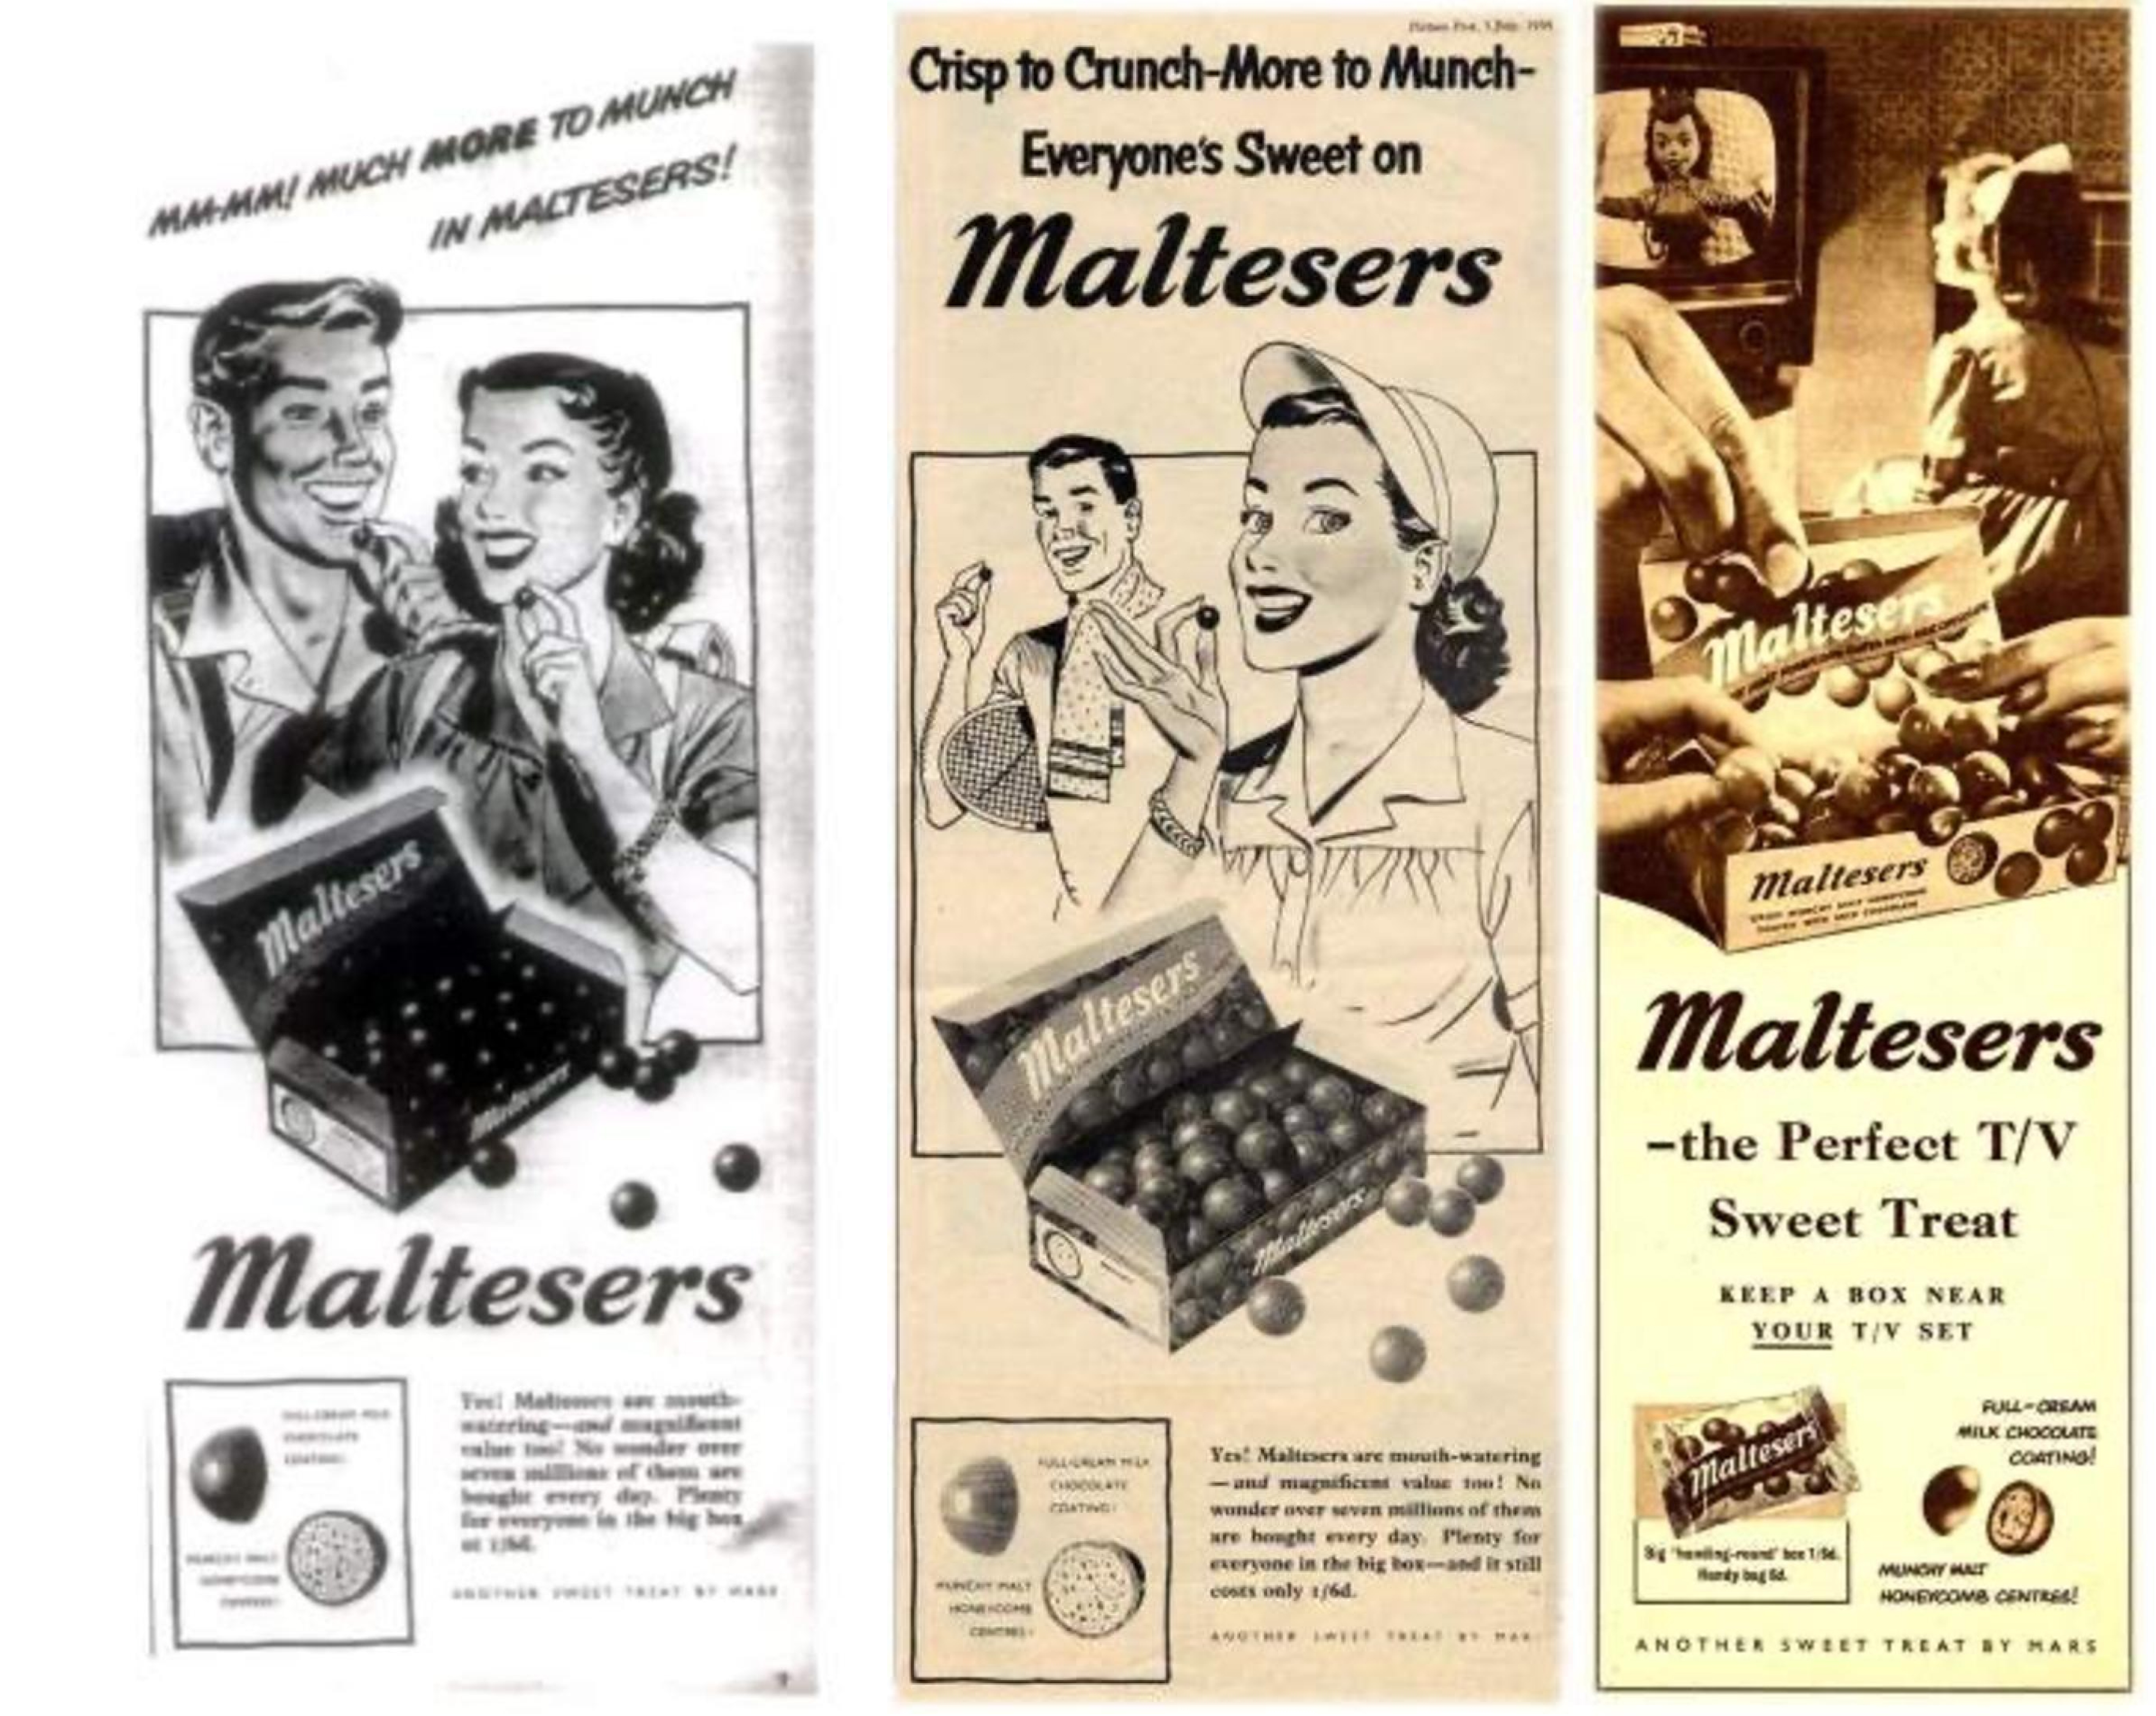 Publicité de Maltesers en noir et blanc des années 1950 montrant un homme et une femme en train de grignoter des Maltesers